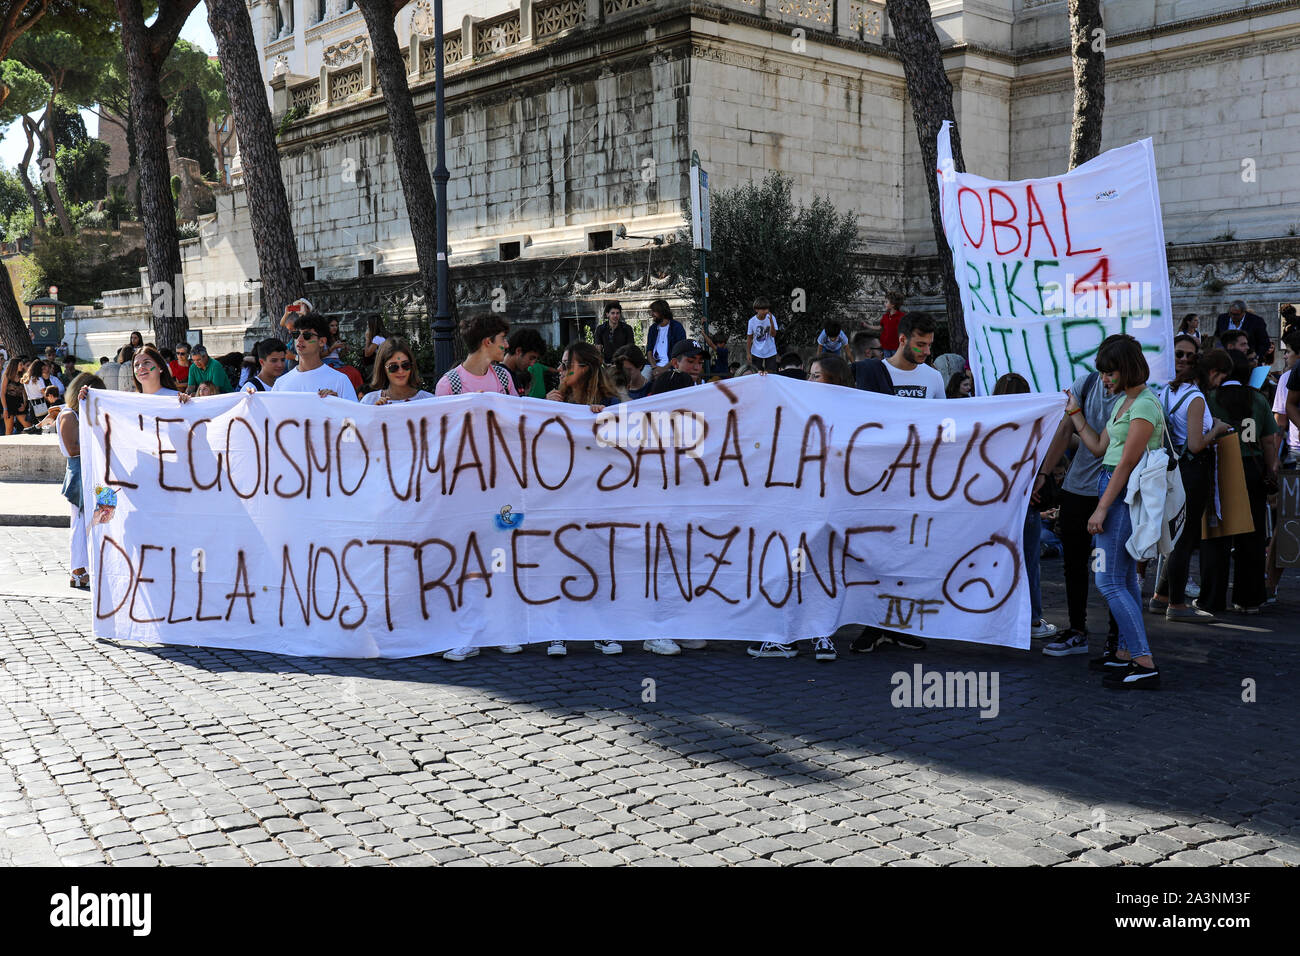 27 Sep 2019. Vendredi pour l'avenir. Grève à l'école pour le climat. Les étudiants italiens tenant une bannière à Rome, Italie. Banque D'Images